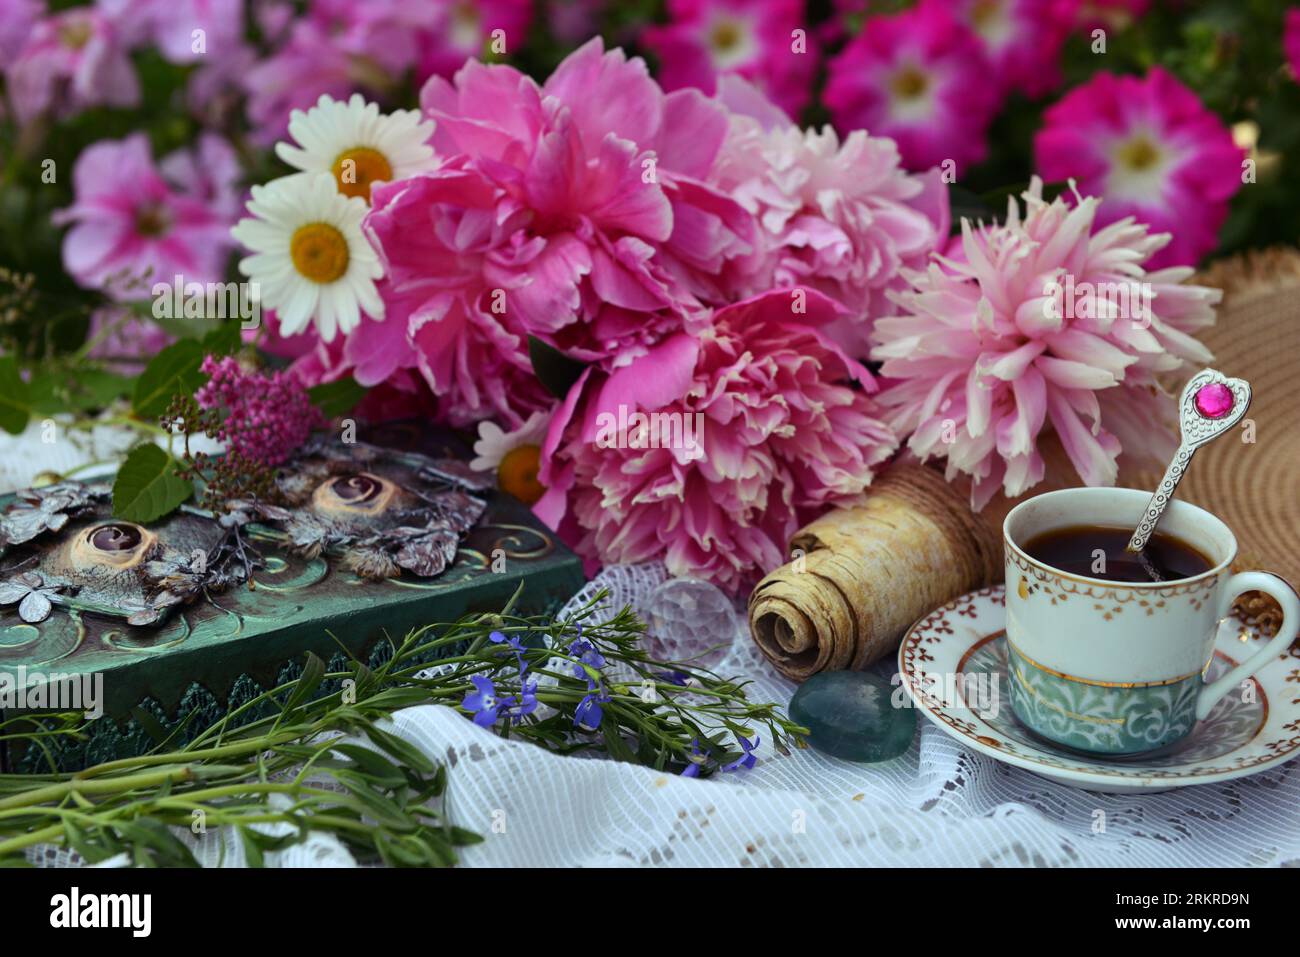 Wunderschönes Stillleben mit Pfingstrosenblüten, dekoriertem Buch und Teetasse auf dem Tisch. Romantische Grußkarte zum Geburtstag, Valentinstag, Muttertag Konzept Stockfoto